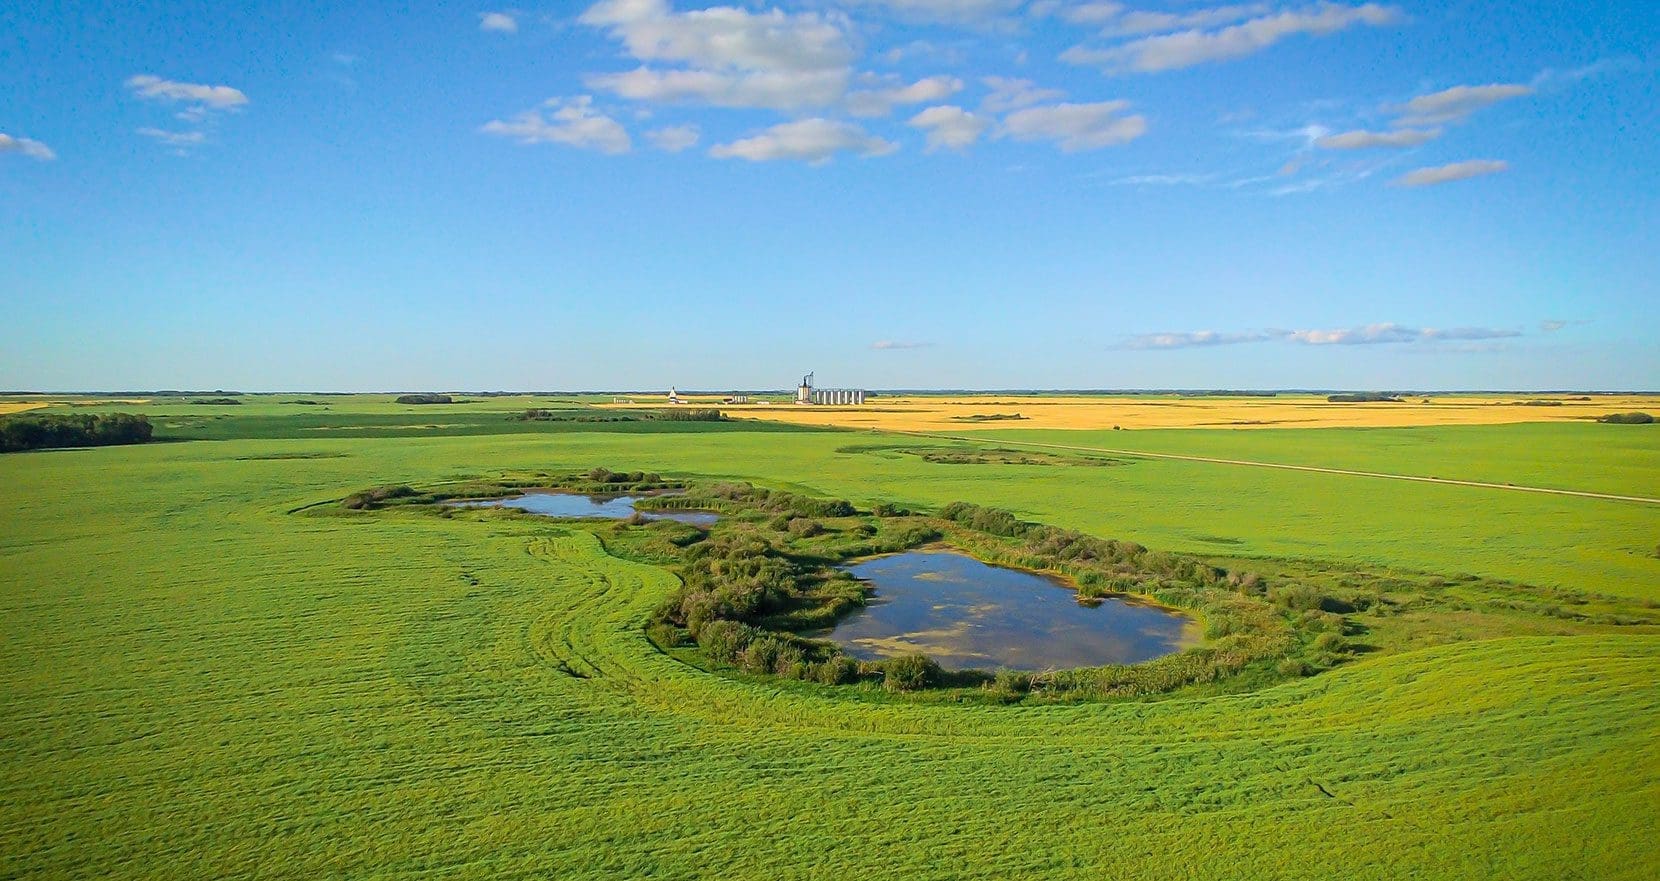 Restored Manitoba prairie wetland